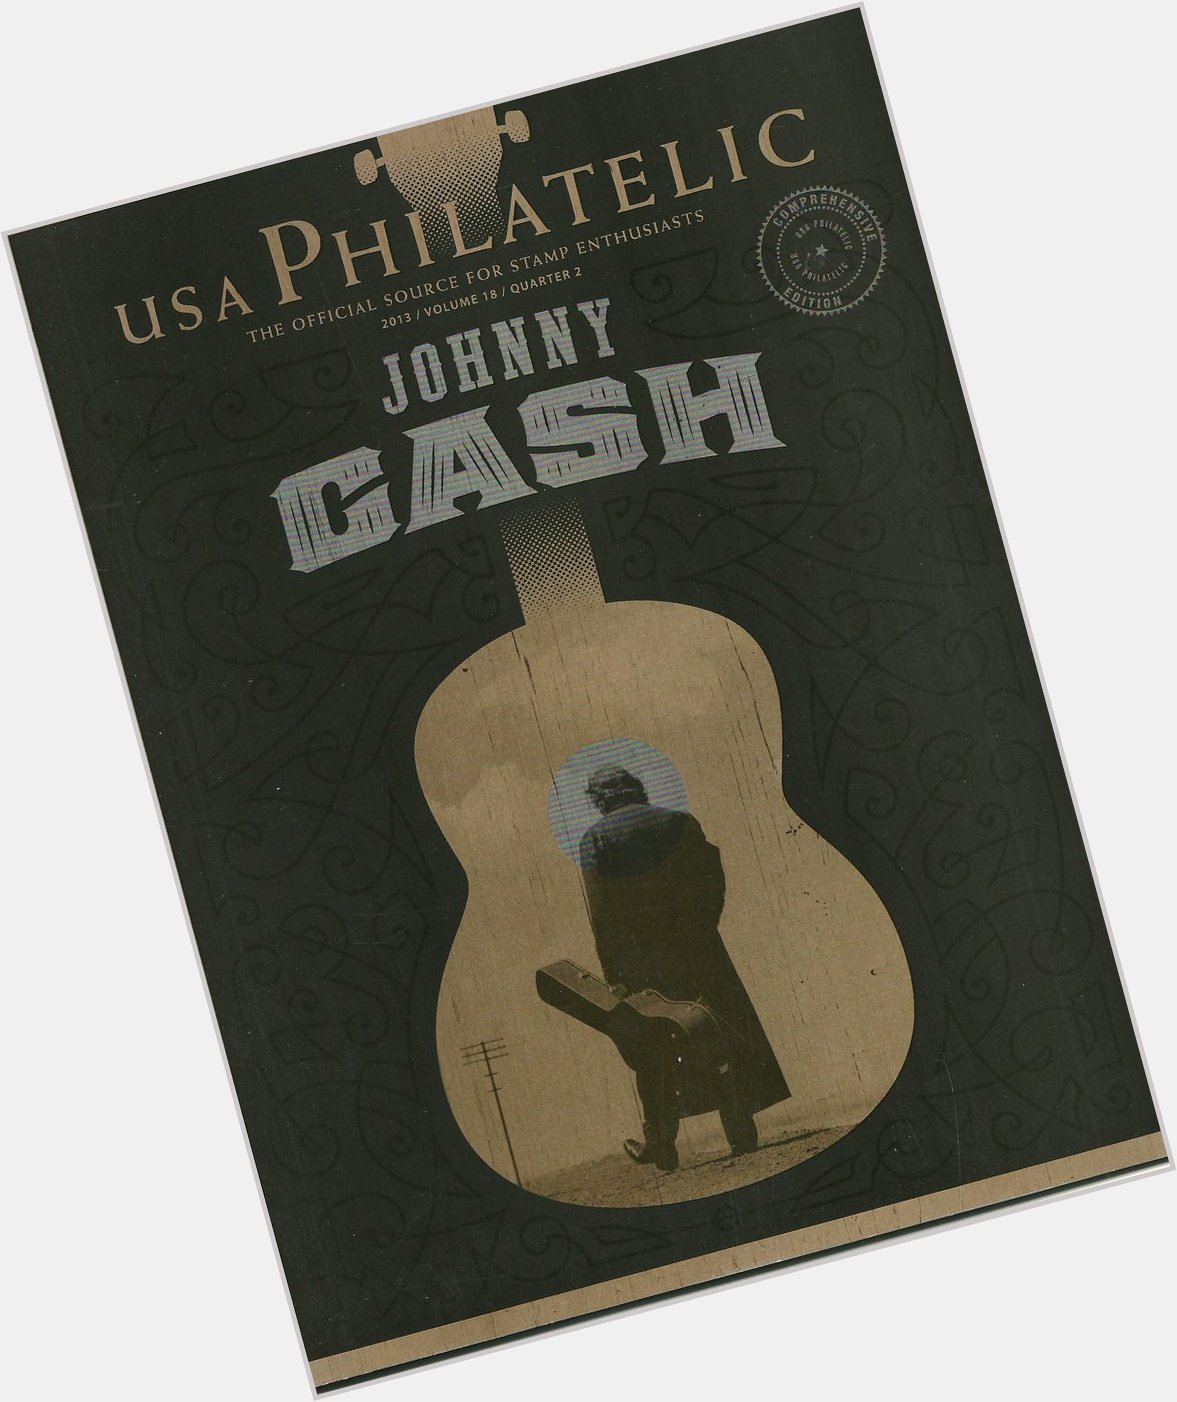 Happy Birthday Johnny Cash  